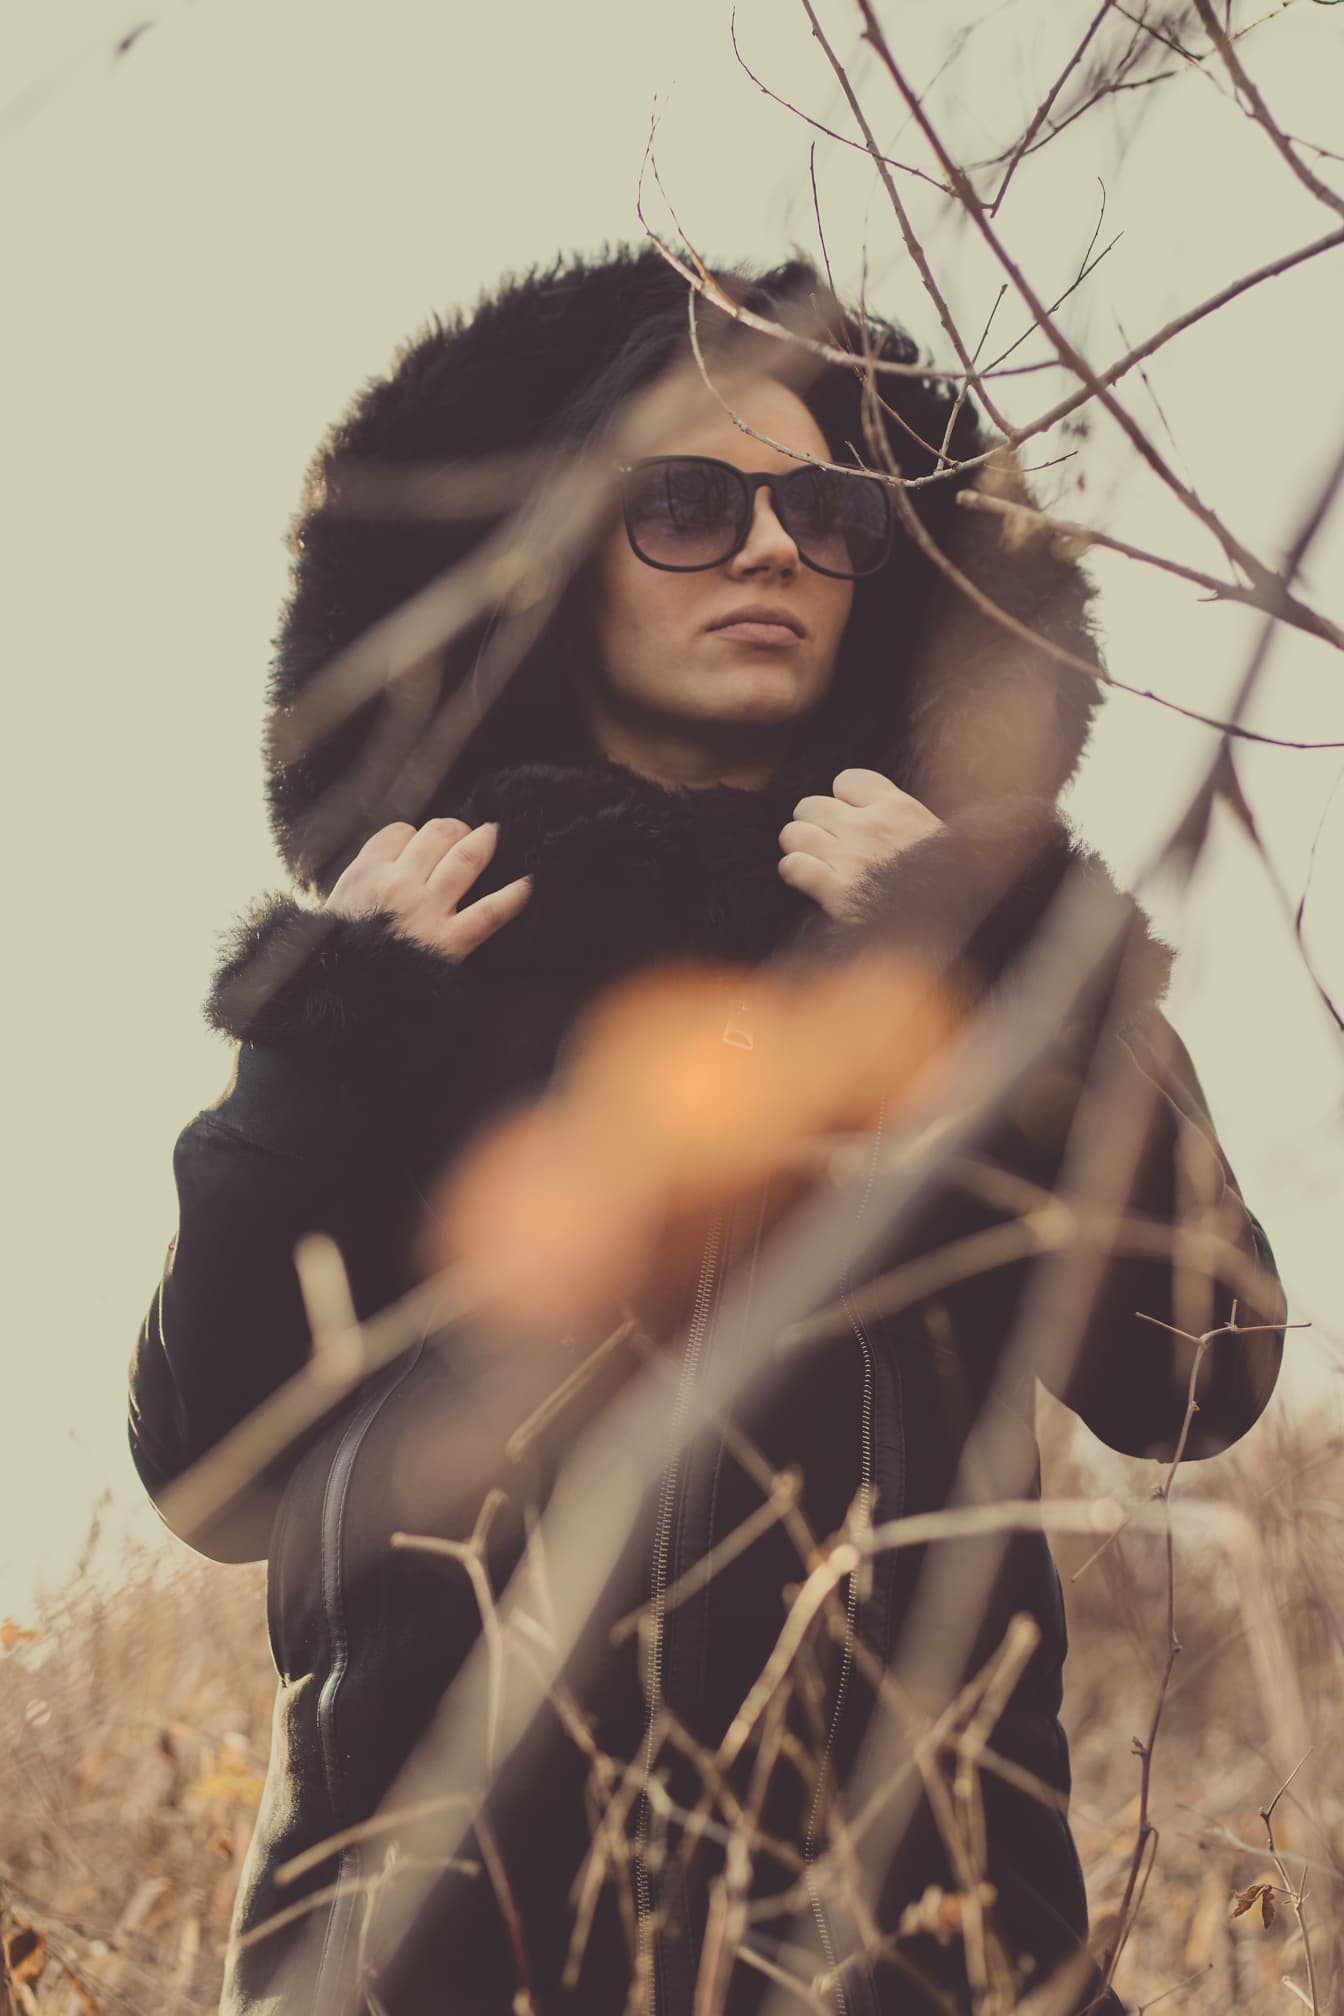 Portret žene koja nosi krznenu jaknu s kapuljačom i sunčane naočale